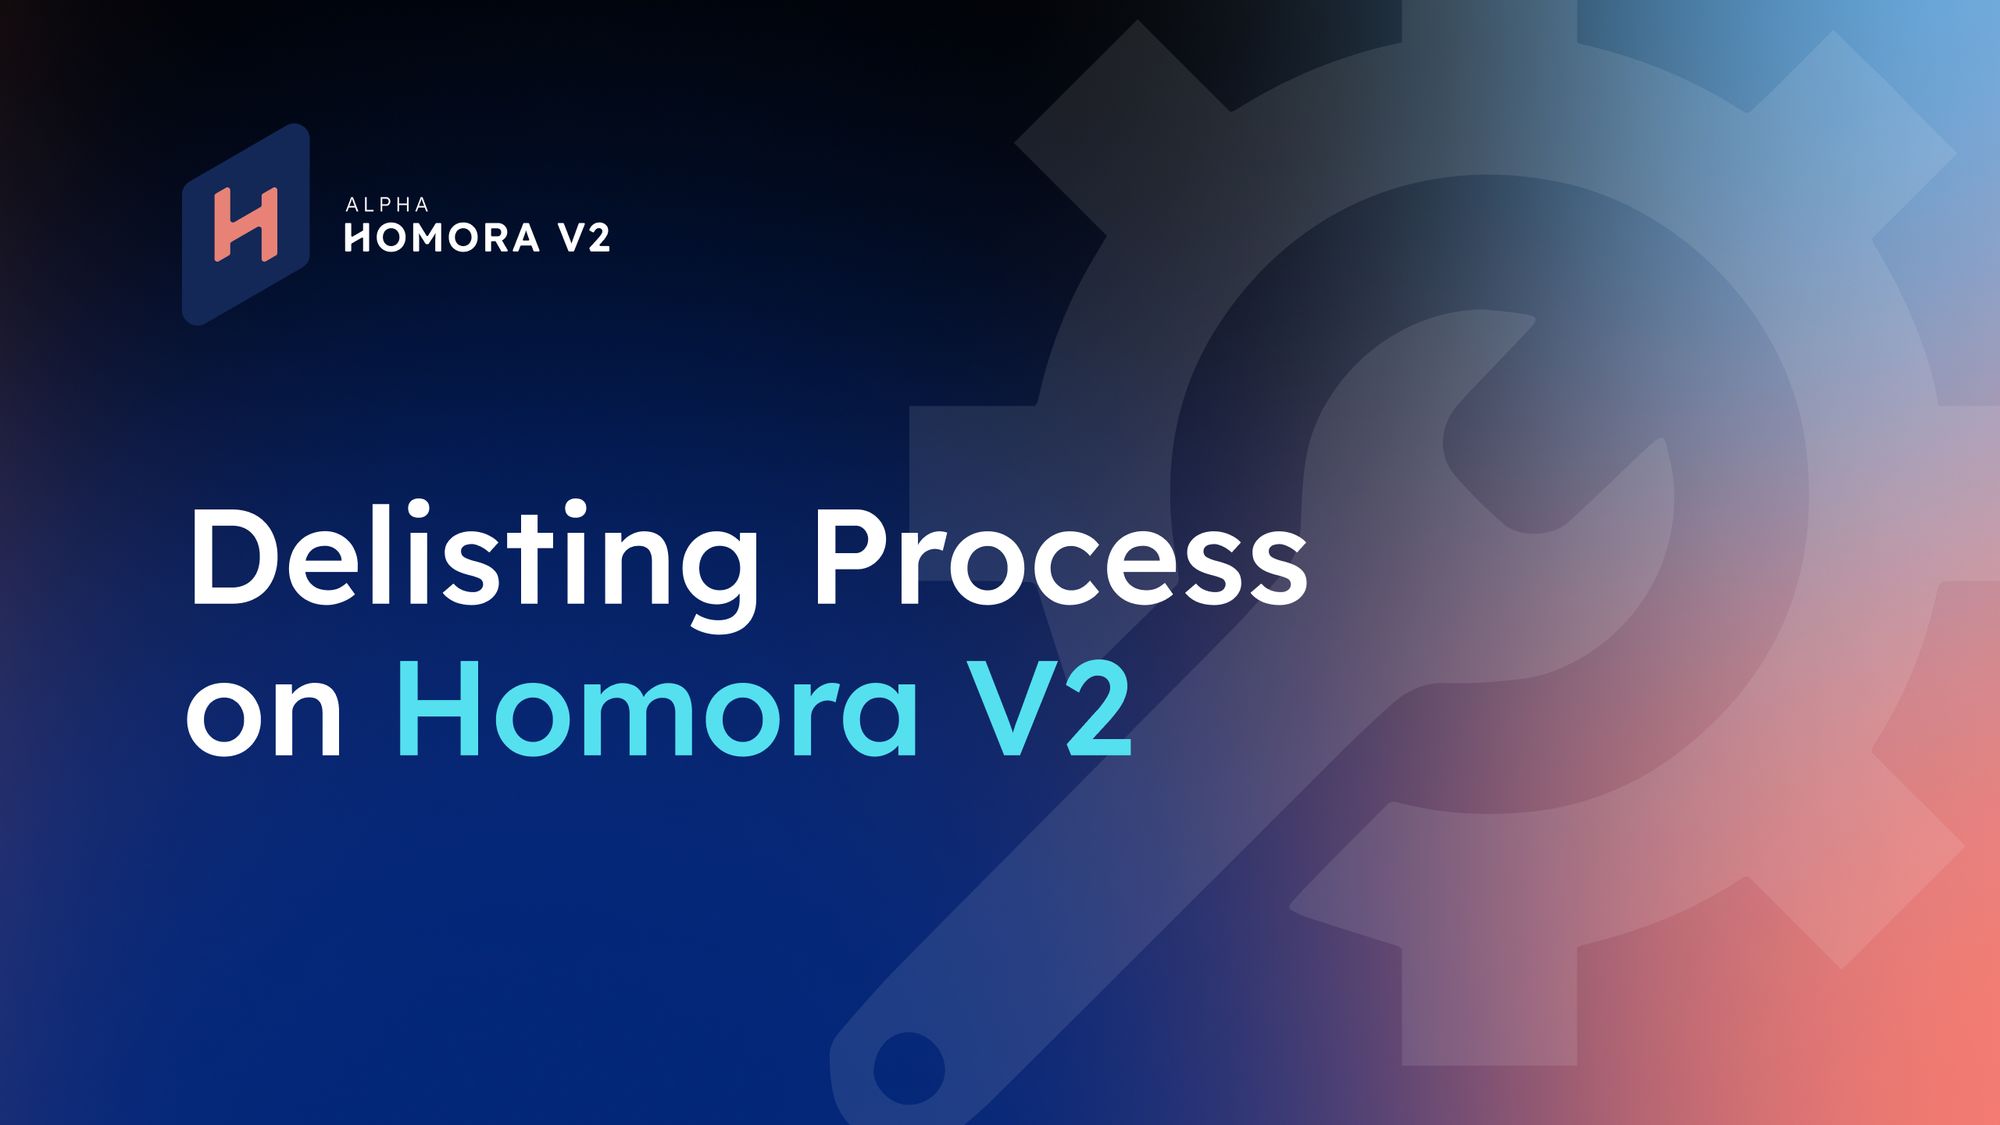 Delisting Process on Homora V2